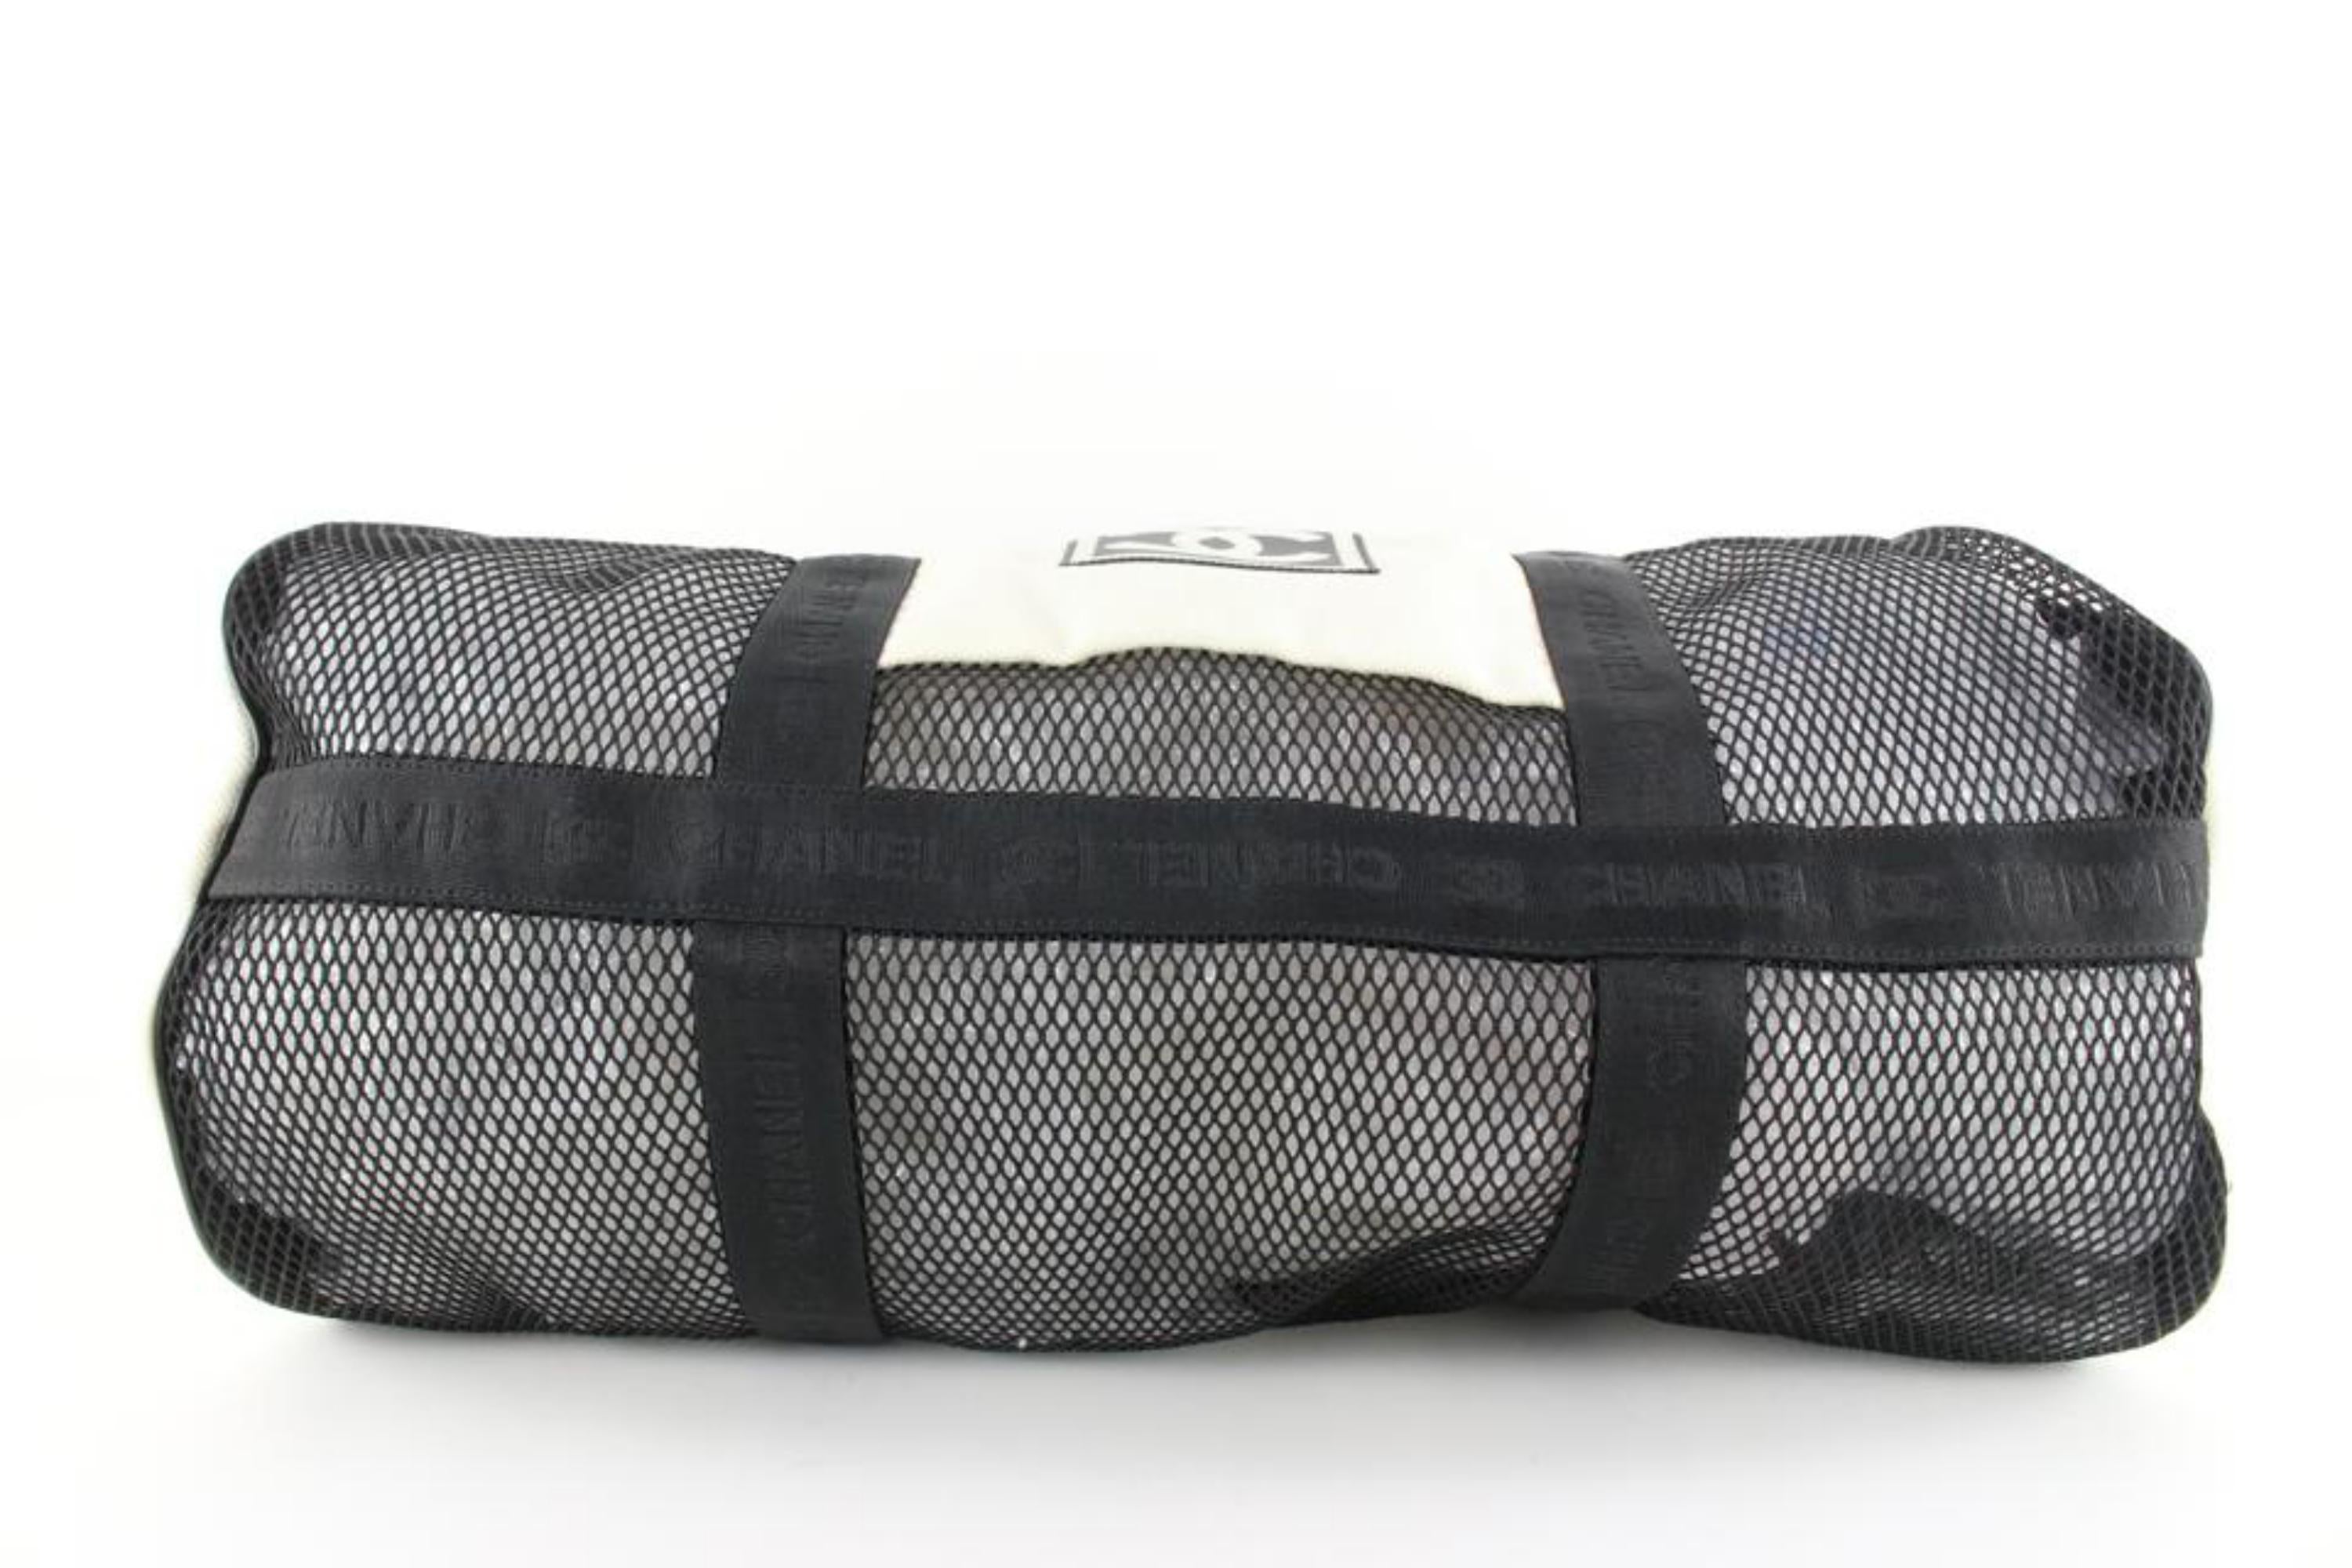 CHANEL, Bags, Chanel Black Vinyl Mesh Sports Line Duffle Bag